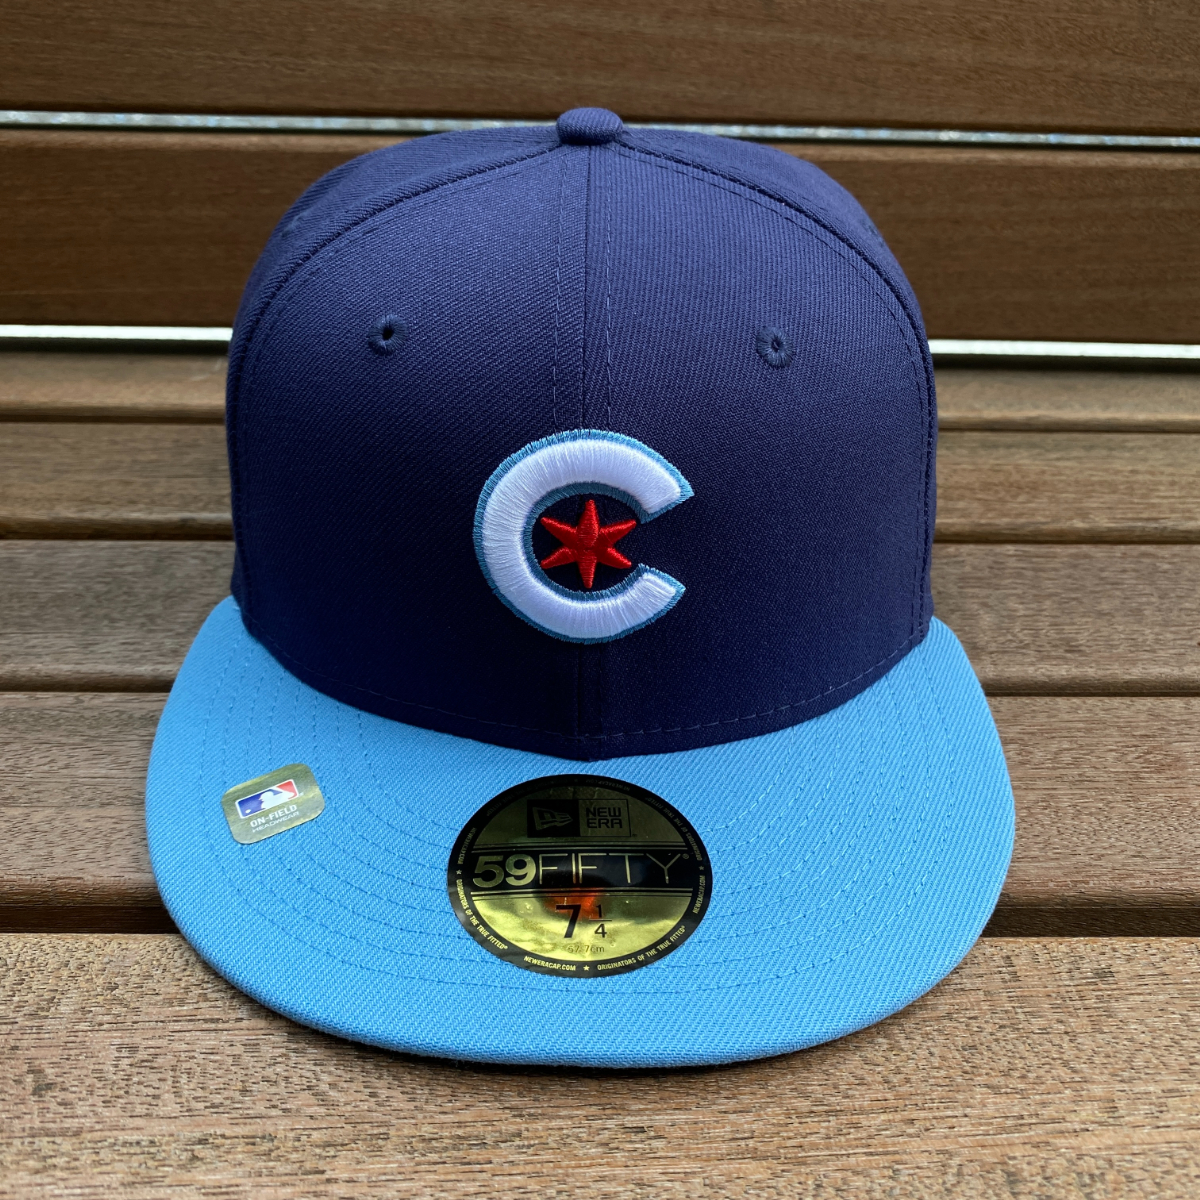 限定モデル 【7.1/8】 NEWERA ニューエラ MLB シカゴ カブス Chicago Cubs シティコネクト City Connect 59FIFTY 米国正規品 メジャー_画像2